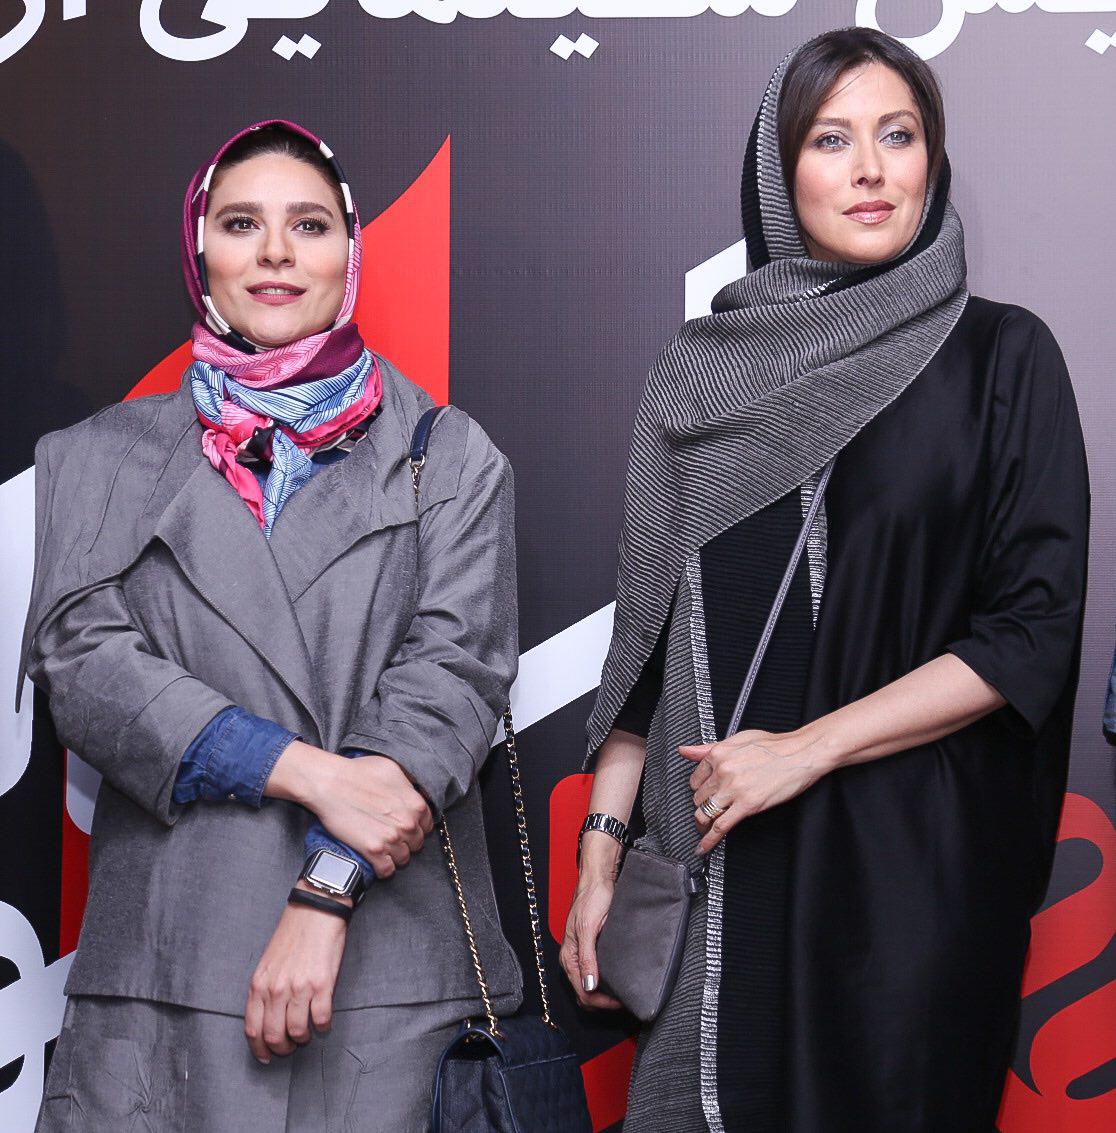 مهتاب کرامتی در جشنواره فیلم سینمایی چهارراه استانبول به همراه سحر دولتشاهی